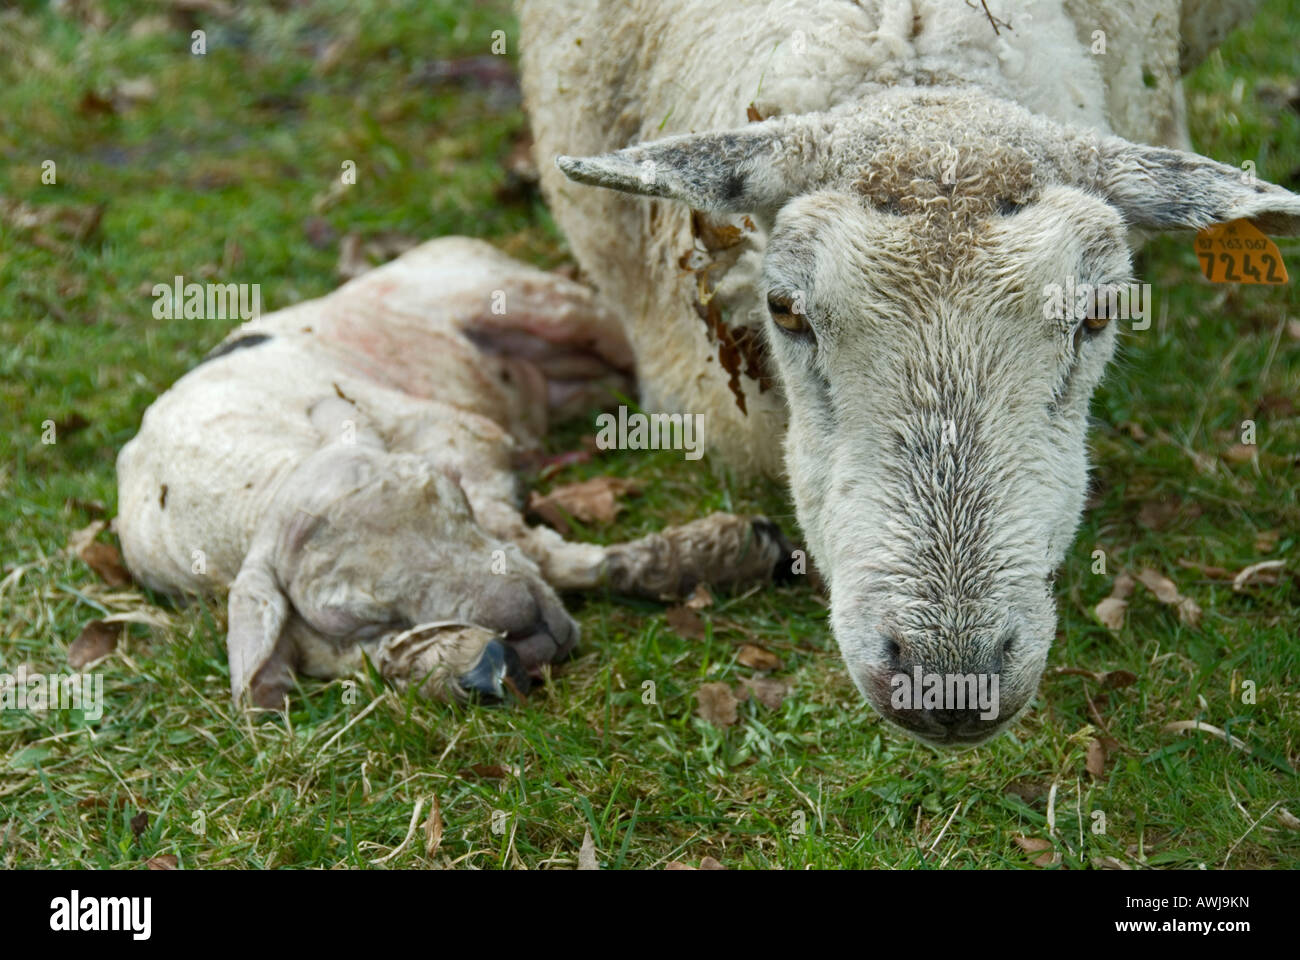 Stock Foto von einem Schaf neben ihr totes Lamm die Ewe hatte Probleme mit der Geburt und das Lamm war gestorben Stockfoto